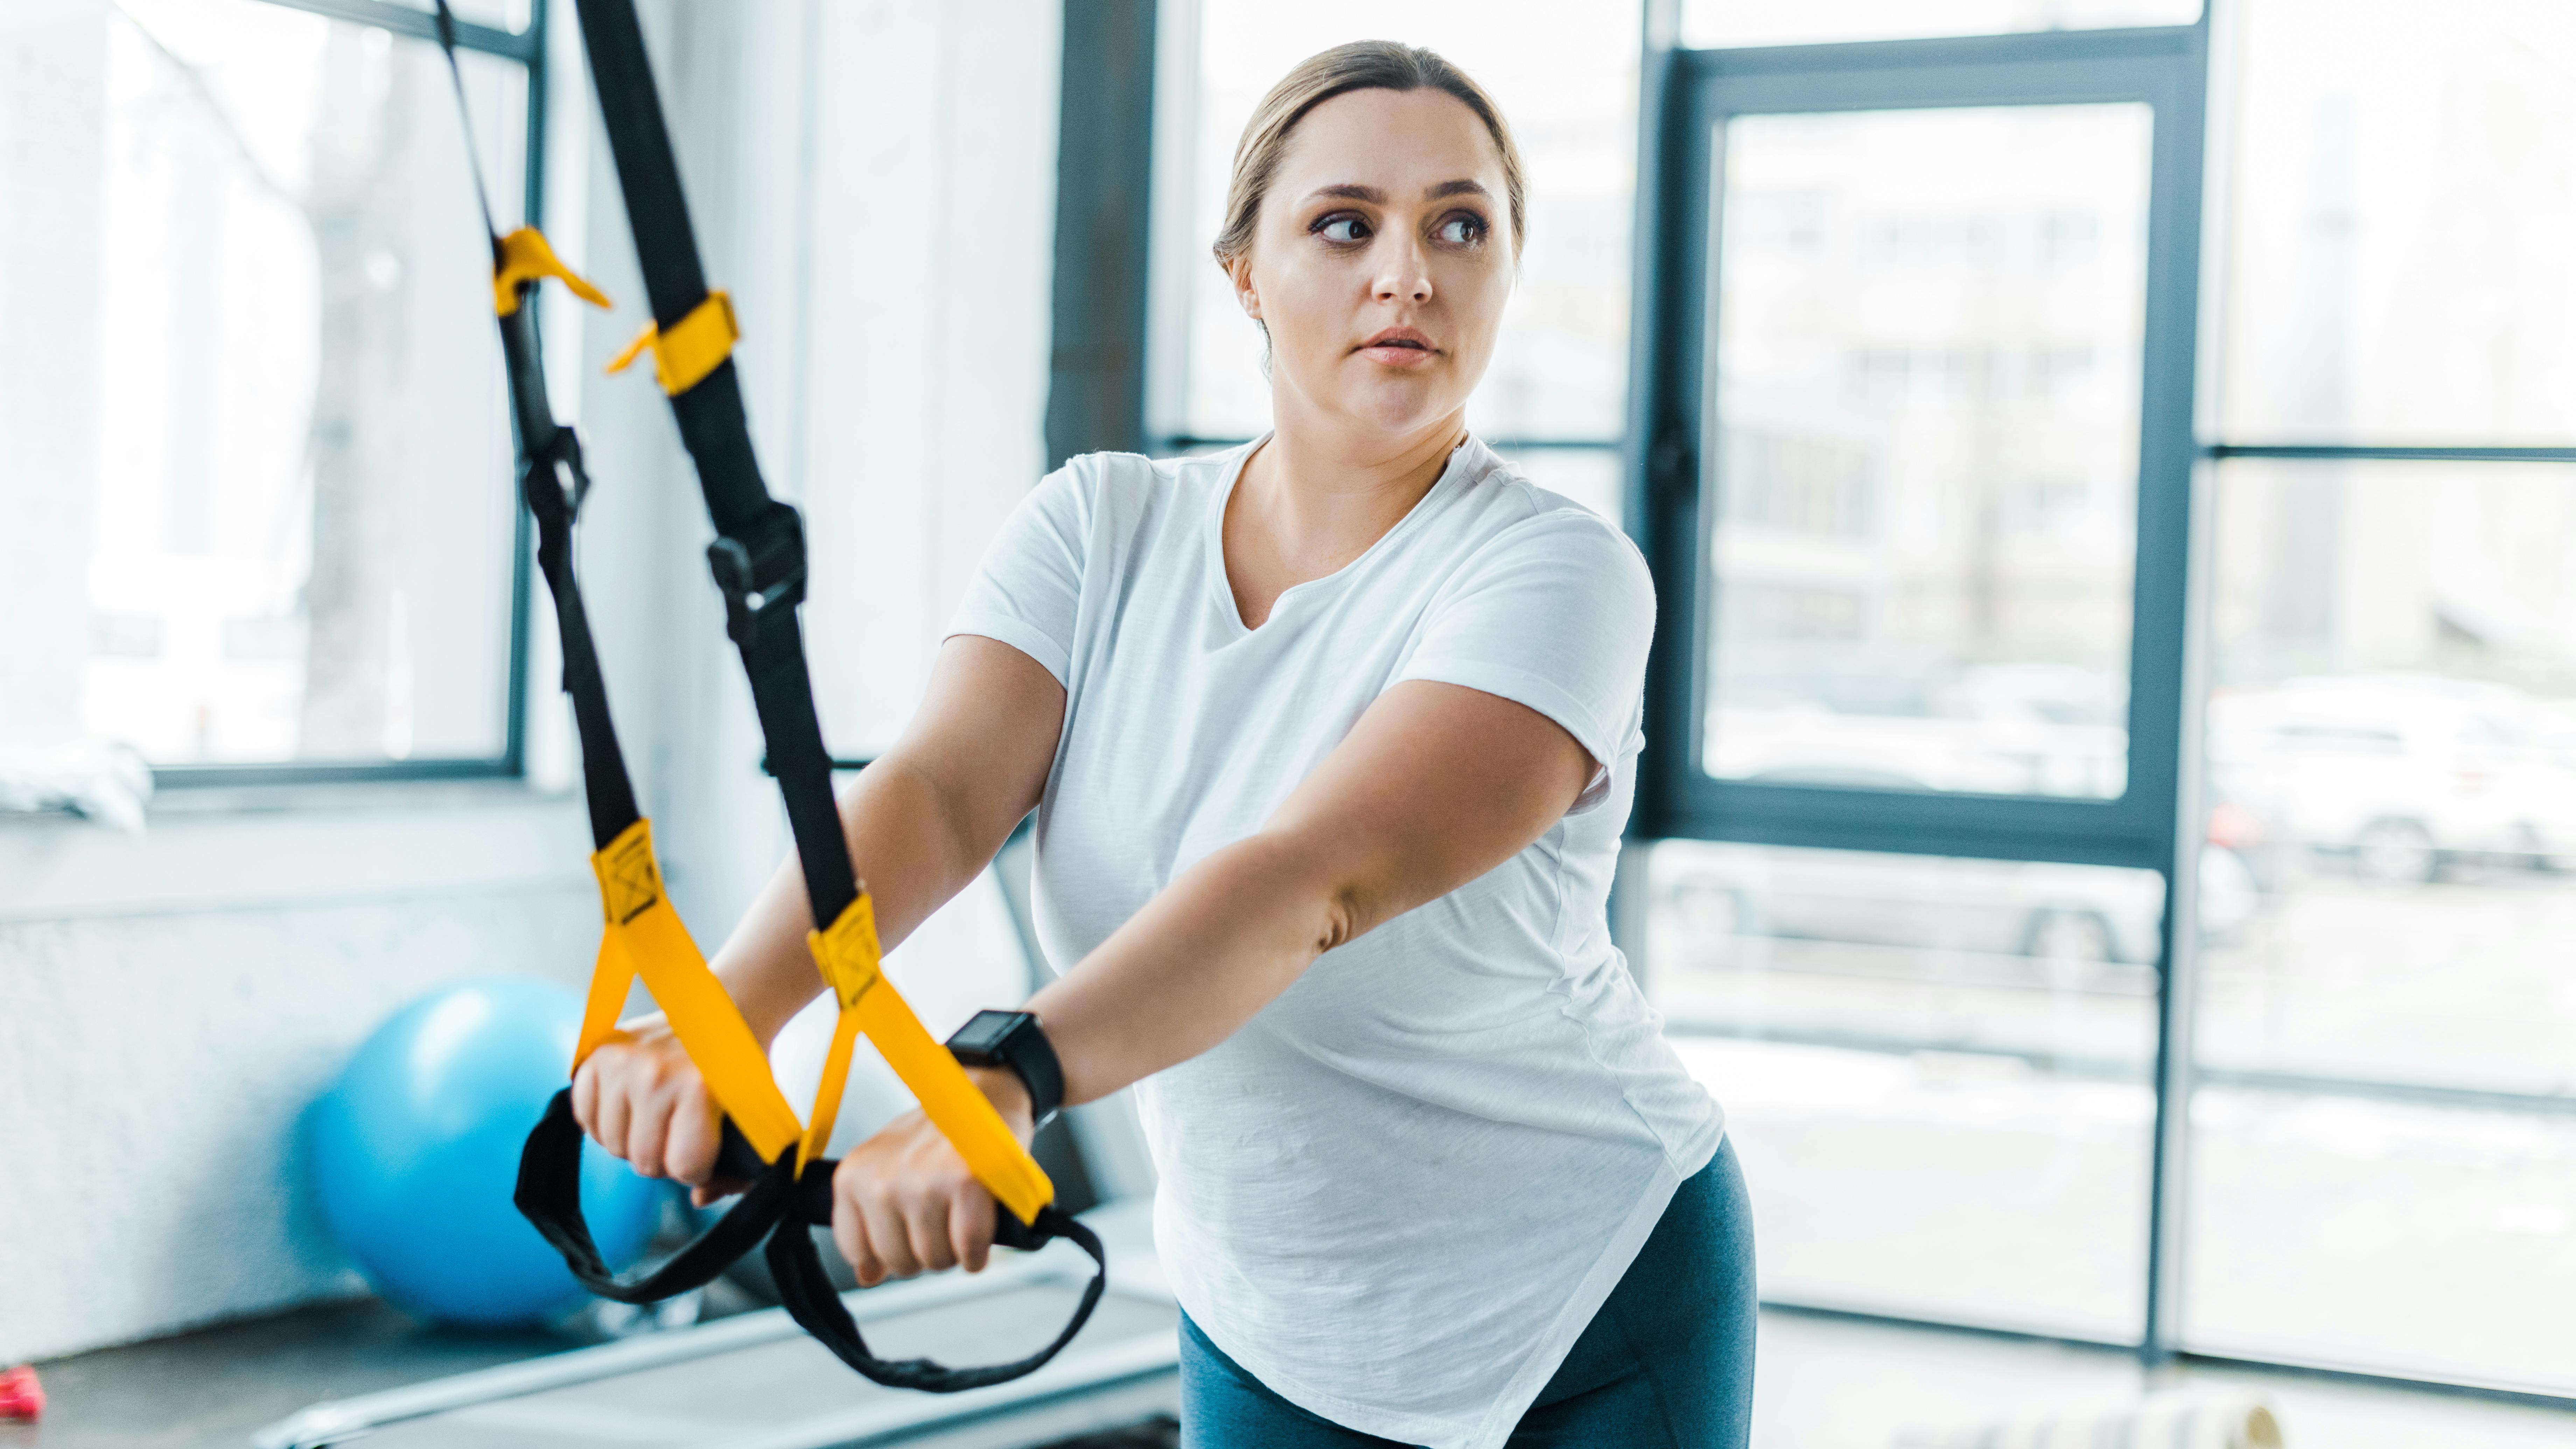 Ung kvinde træner sine arme i fitnesscenter